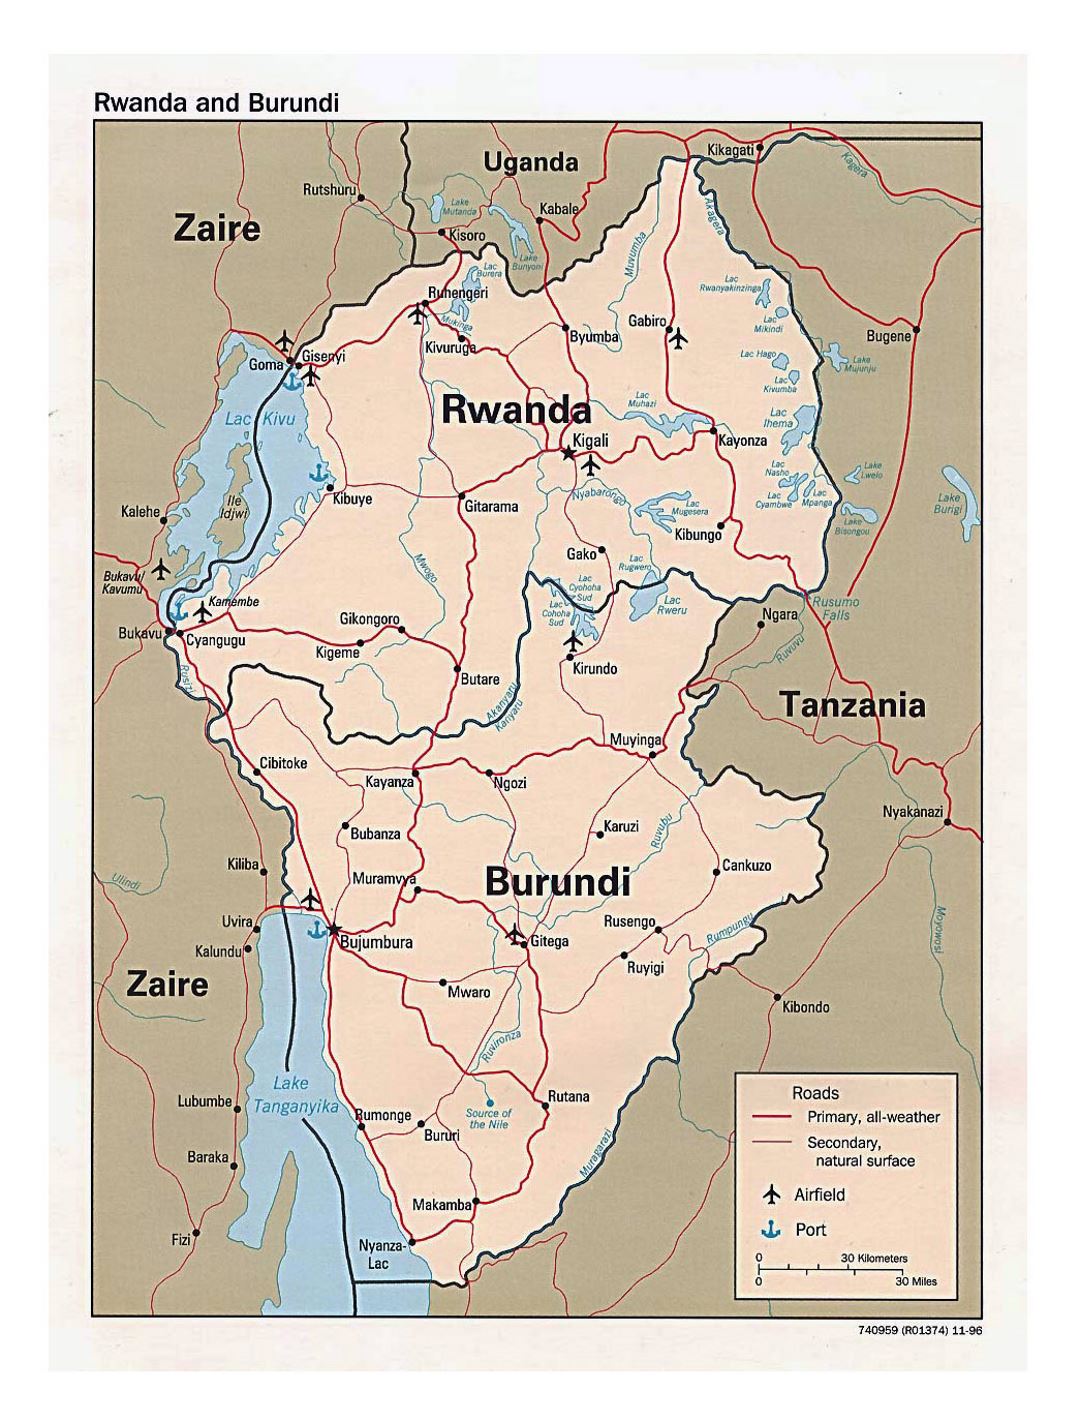 Подробная политическая карта Руанды и Бурунди с дорогами, крупными городами, аэропортами и портами - 1996